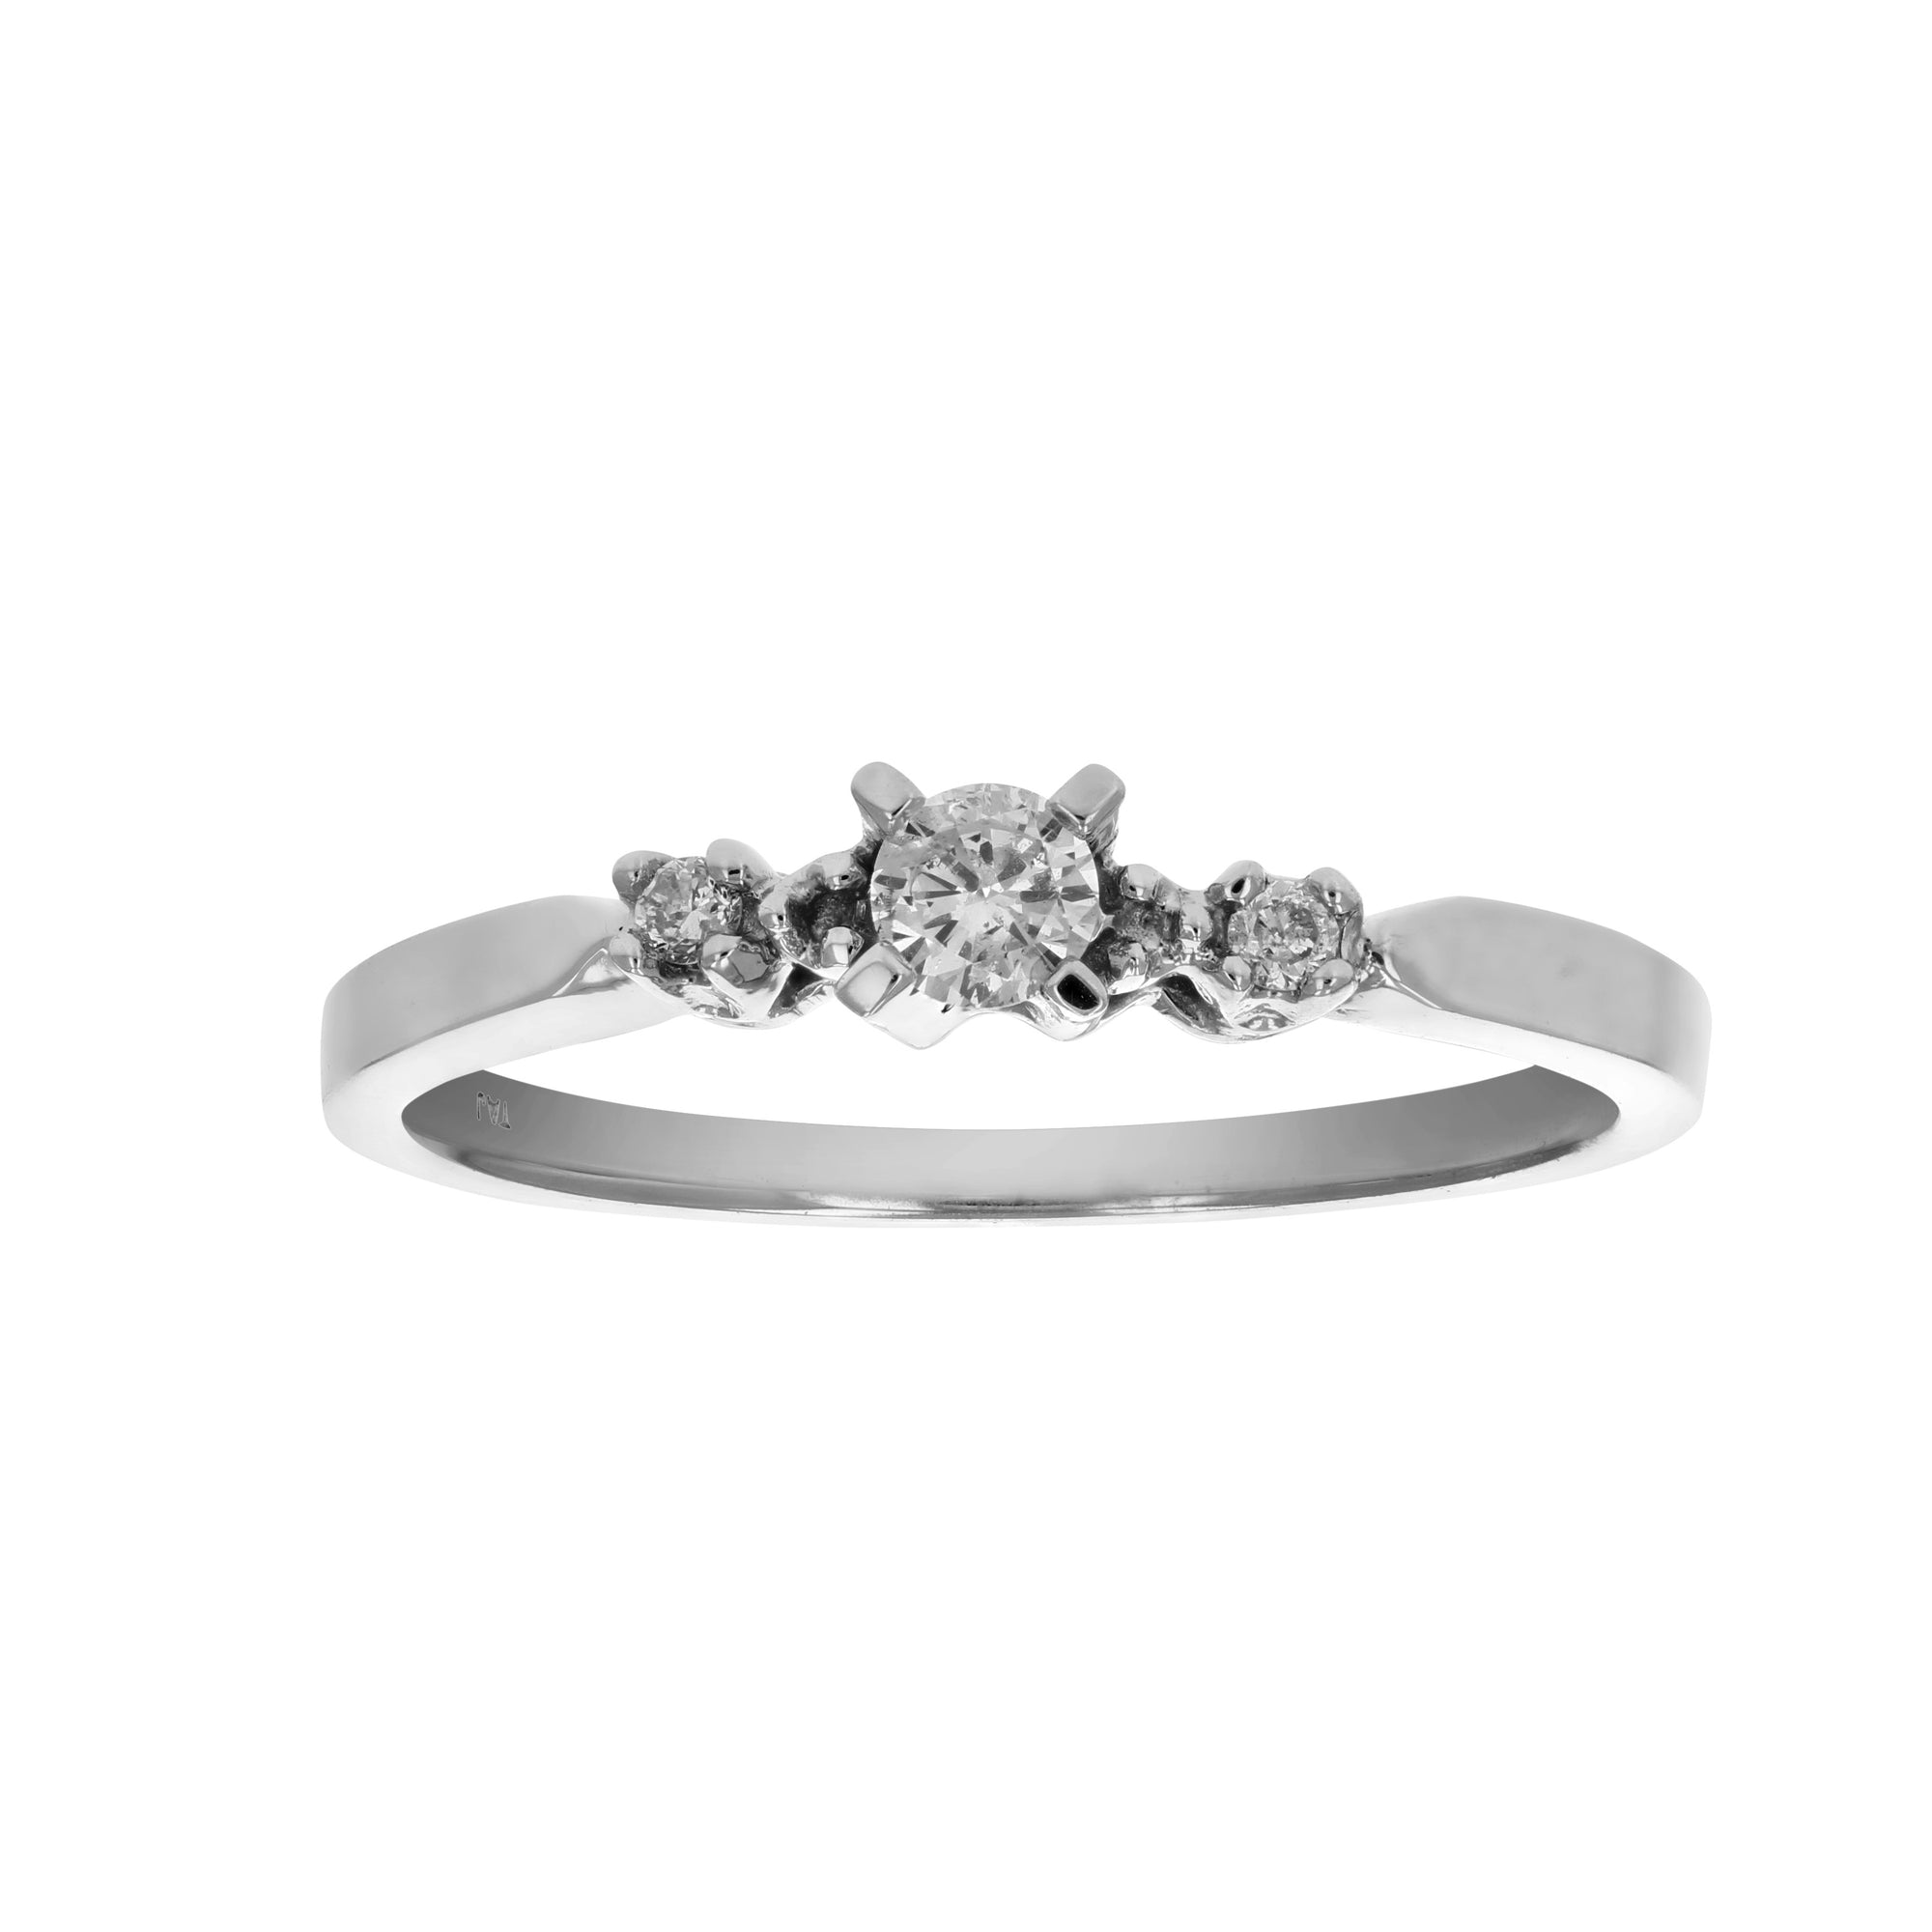 0.15 cttw Diamond 3 Stone Ring 14K White Gold Size 7